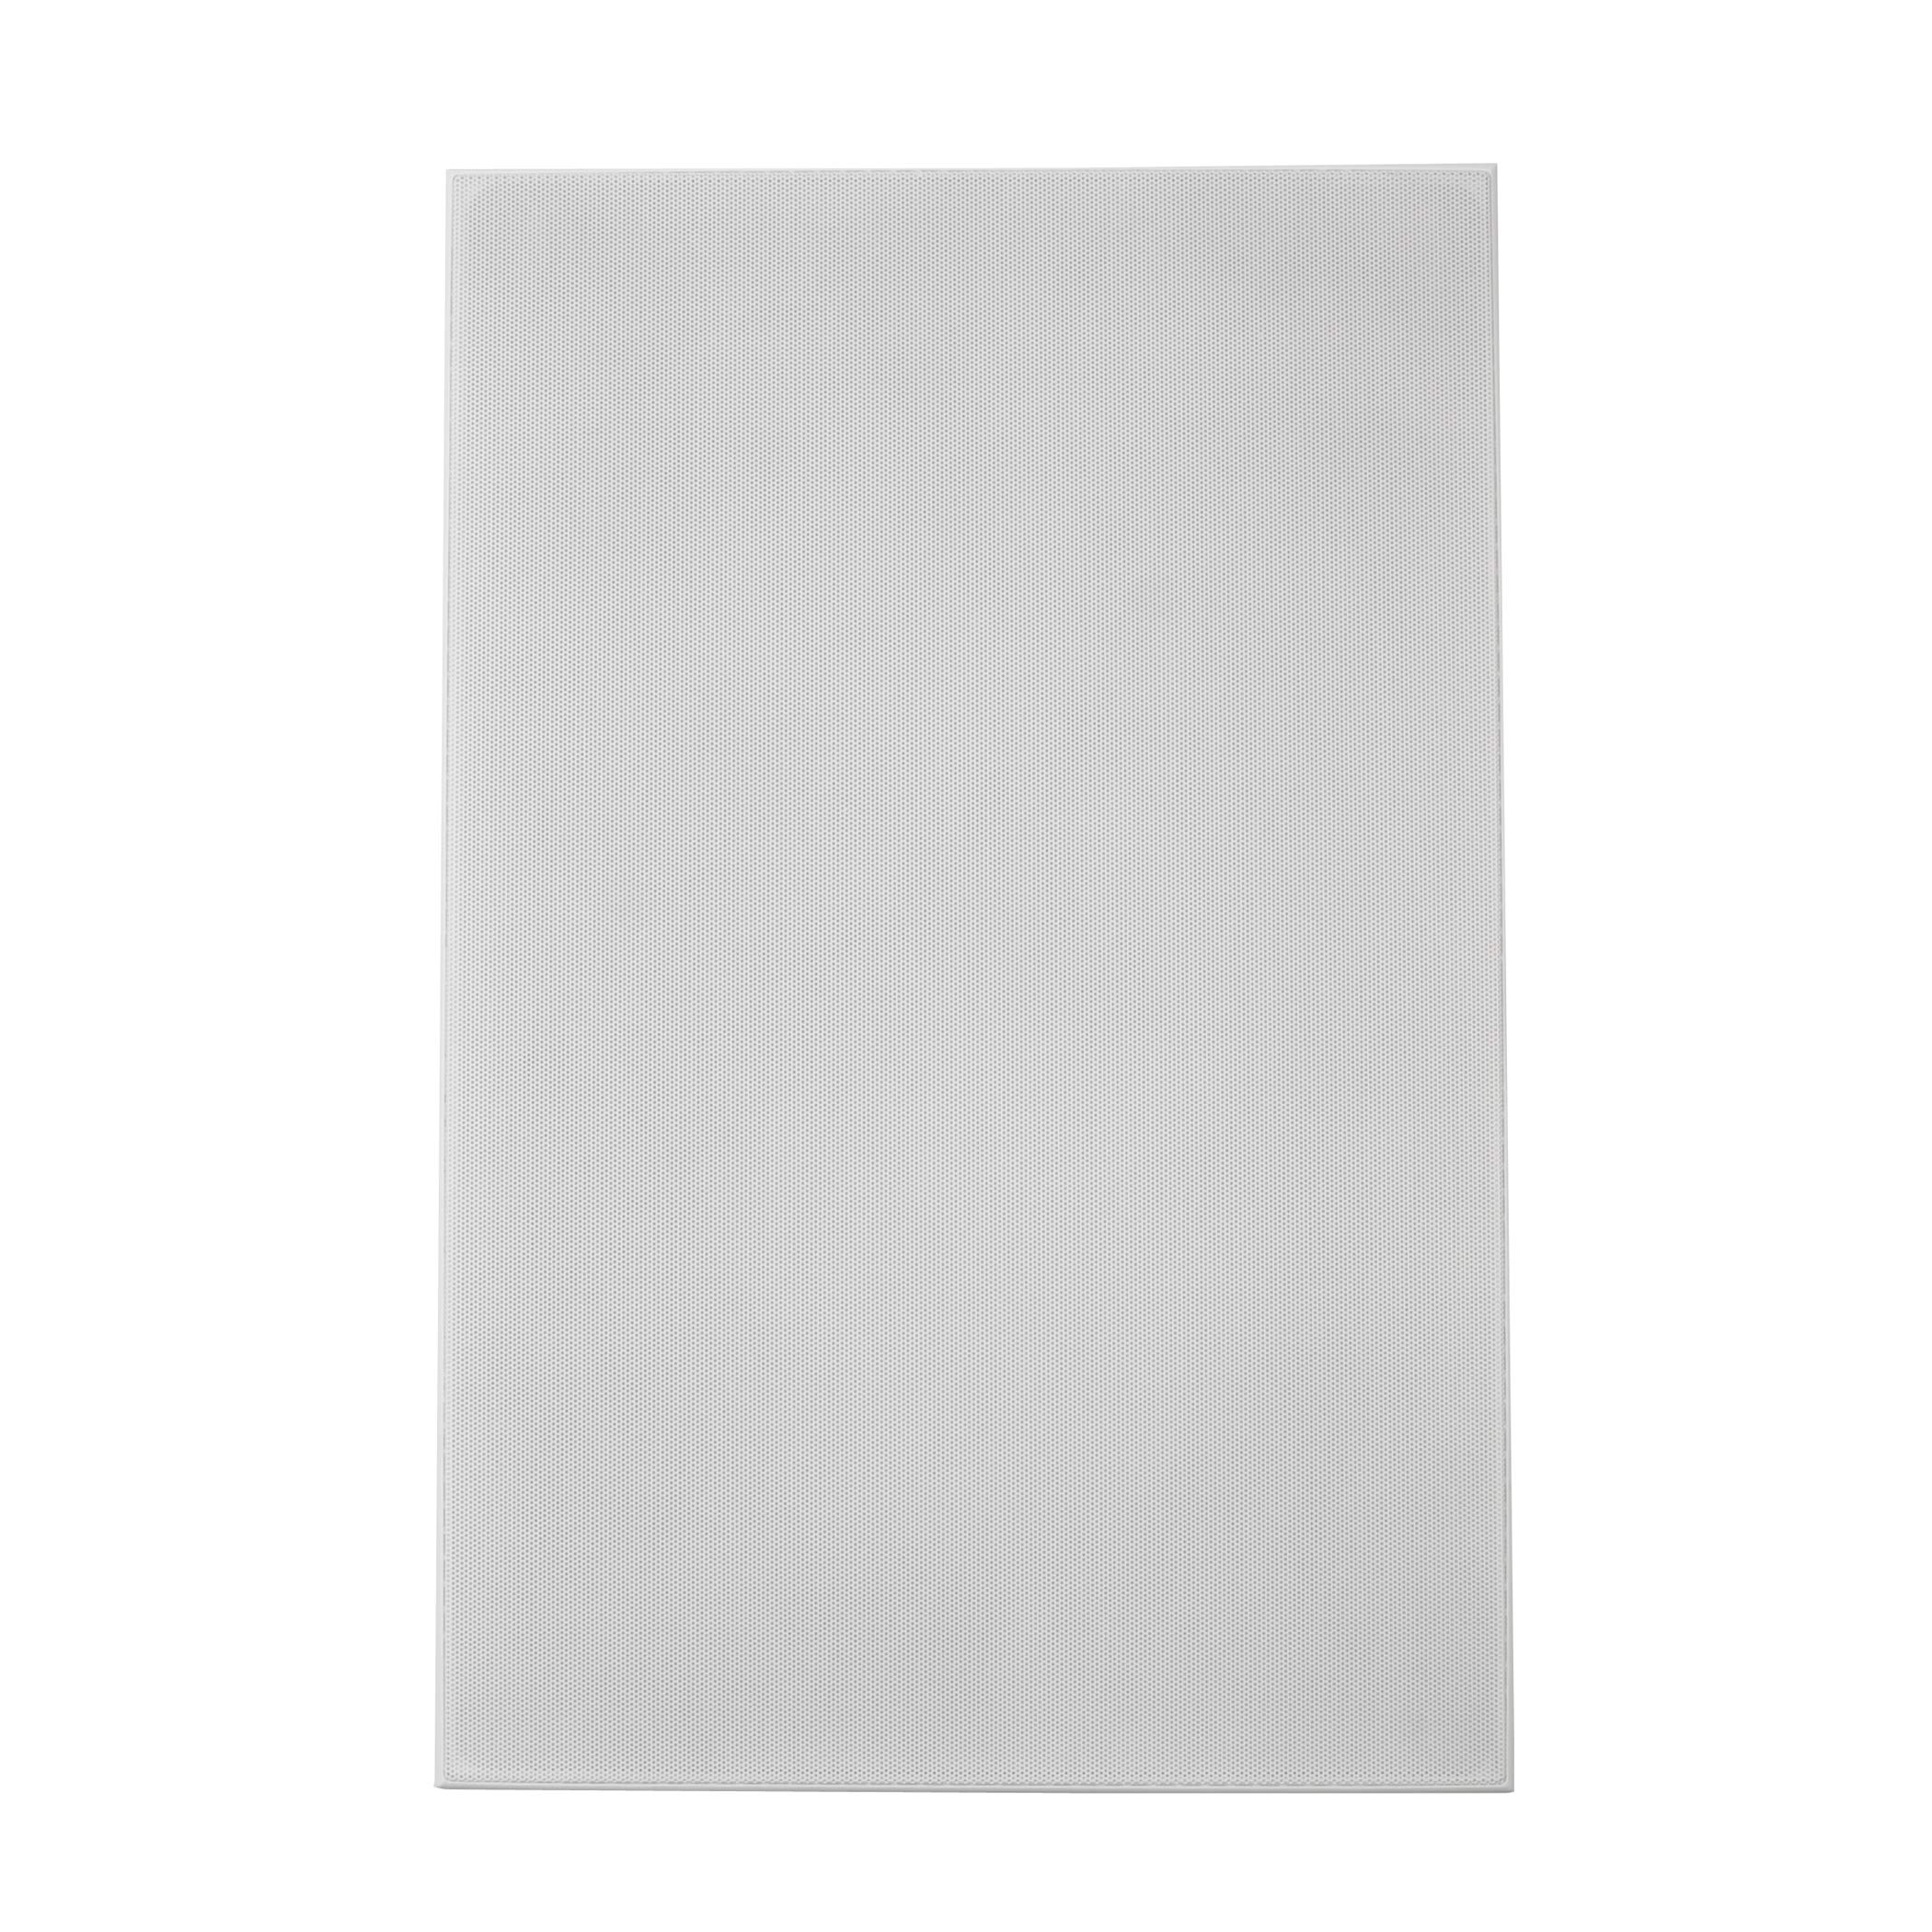 Klipsch Alto-falante de parede R-5800-W II - branco (cada)